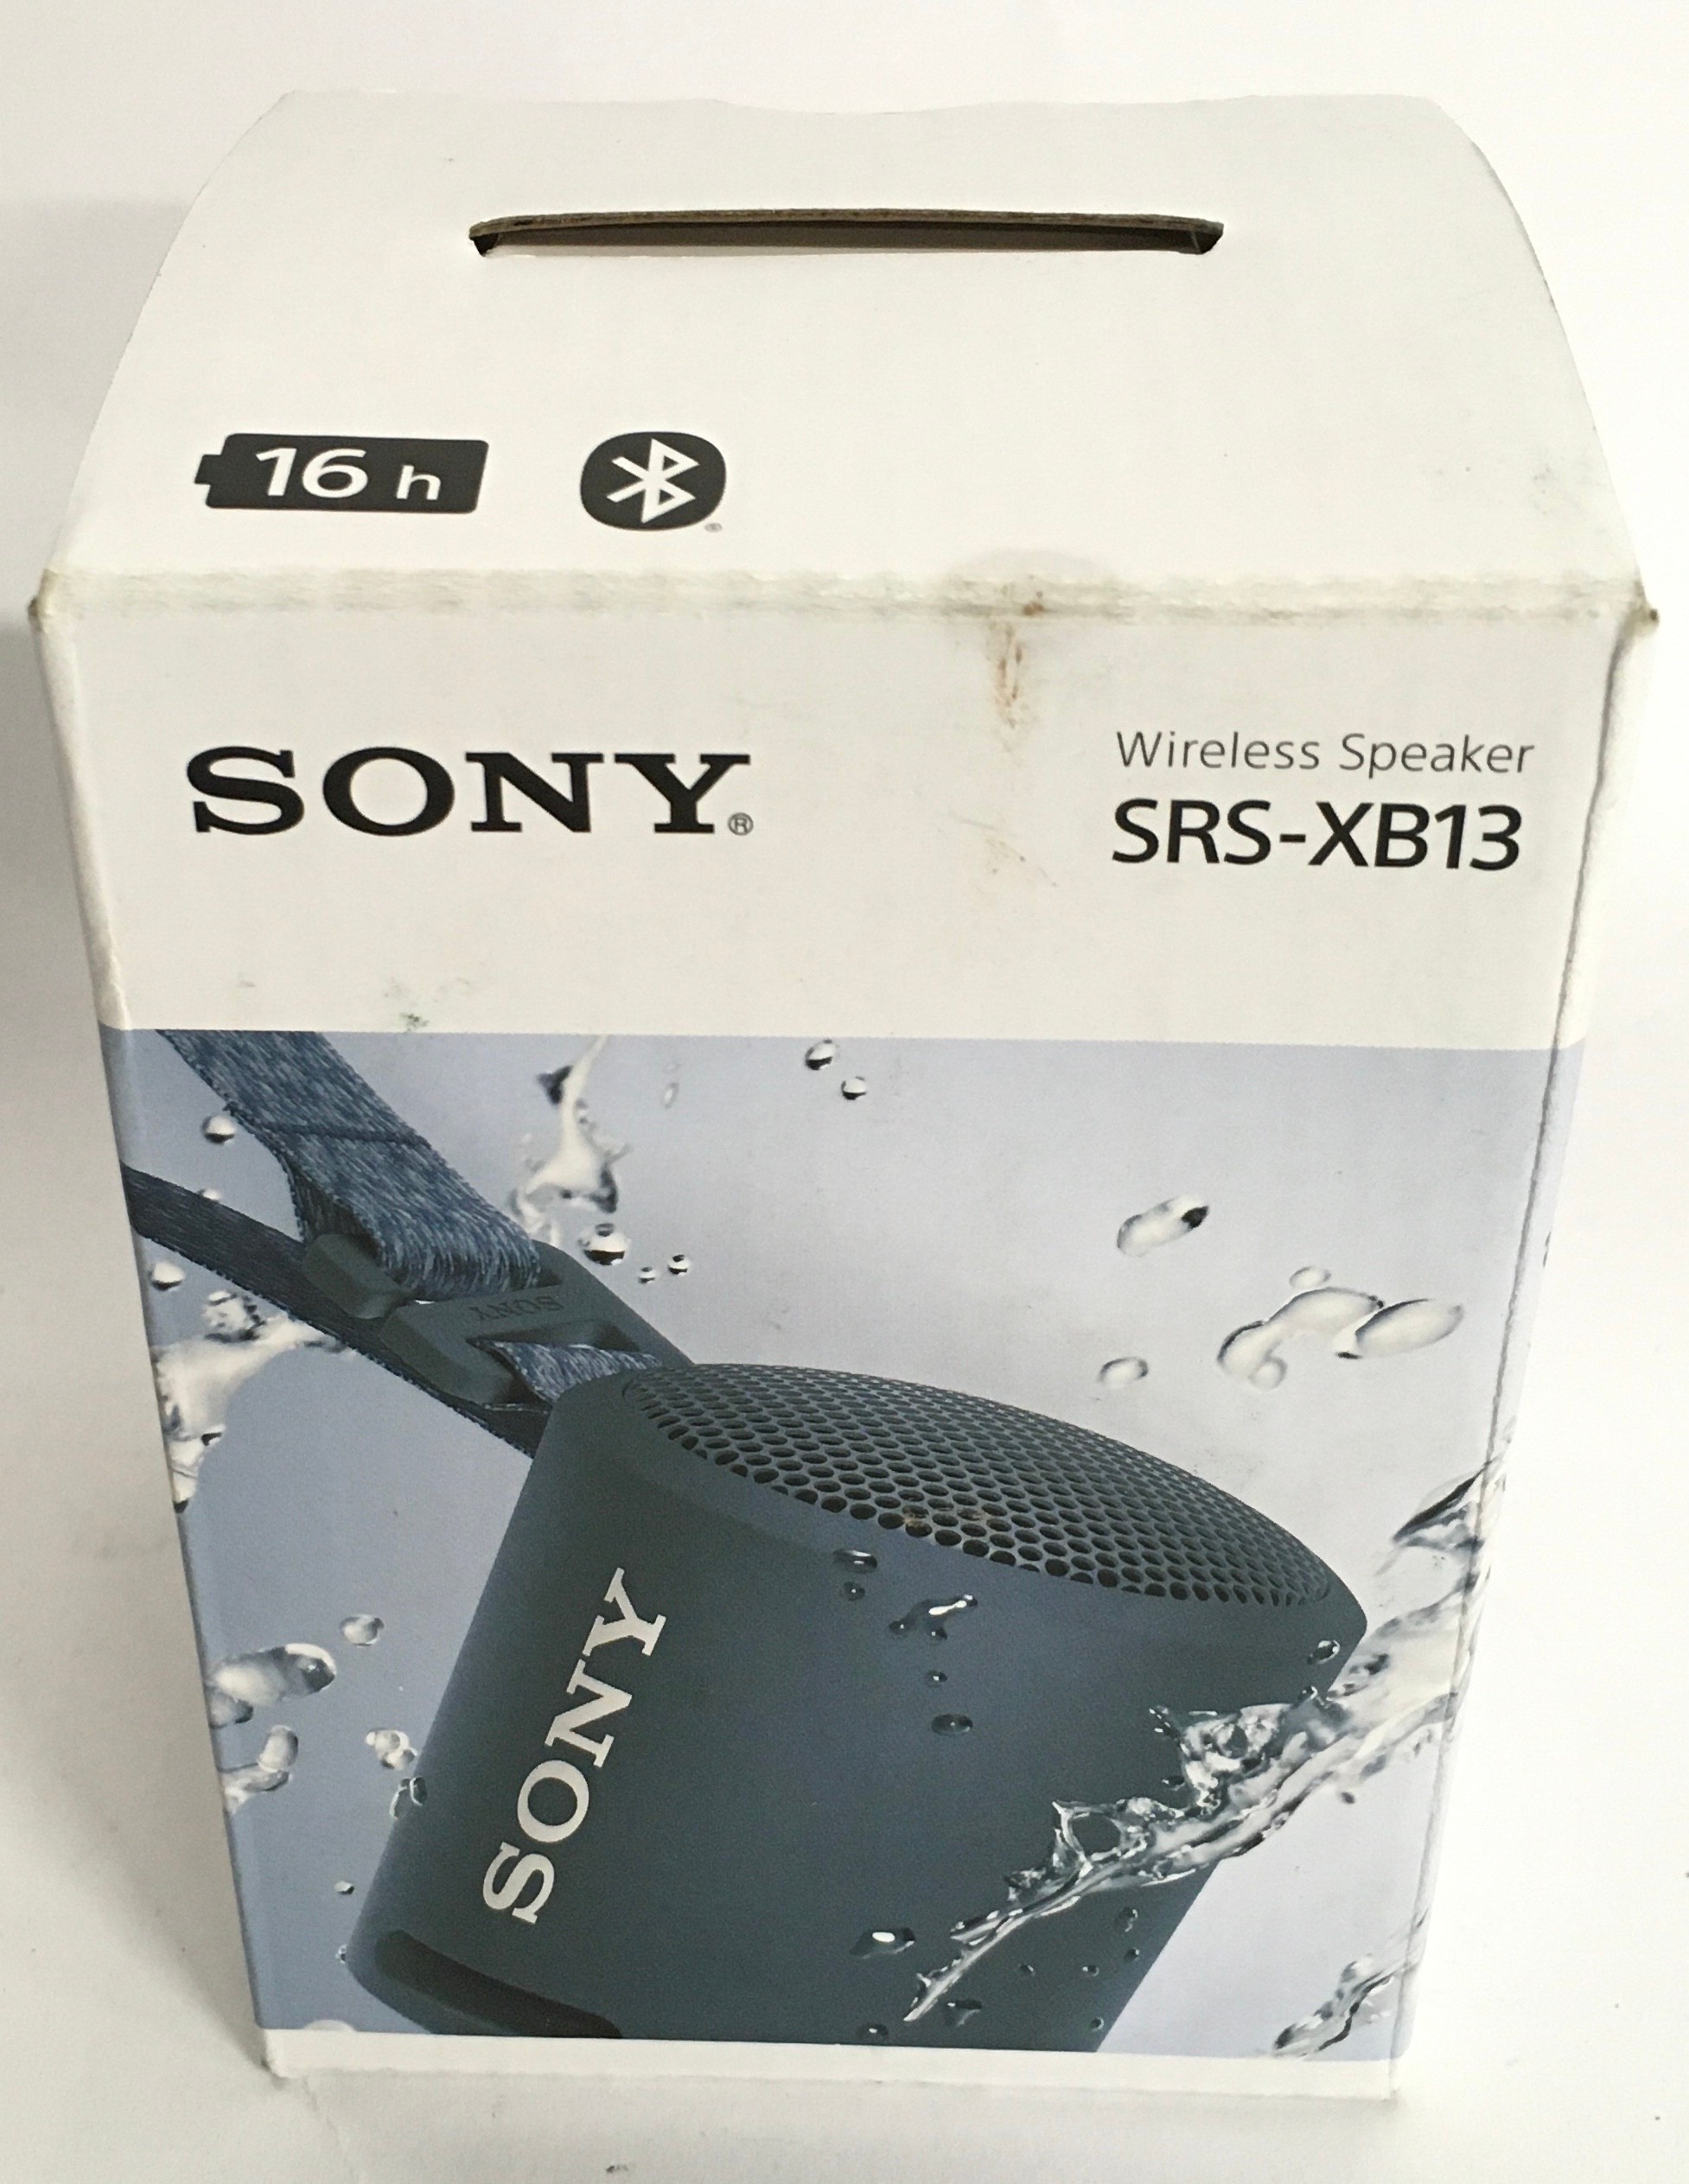 Sony SRS-XB13 Wireless Speaker (102).